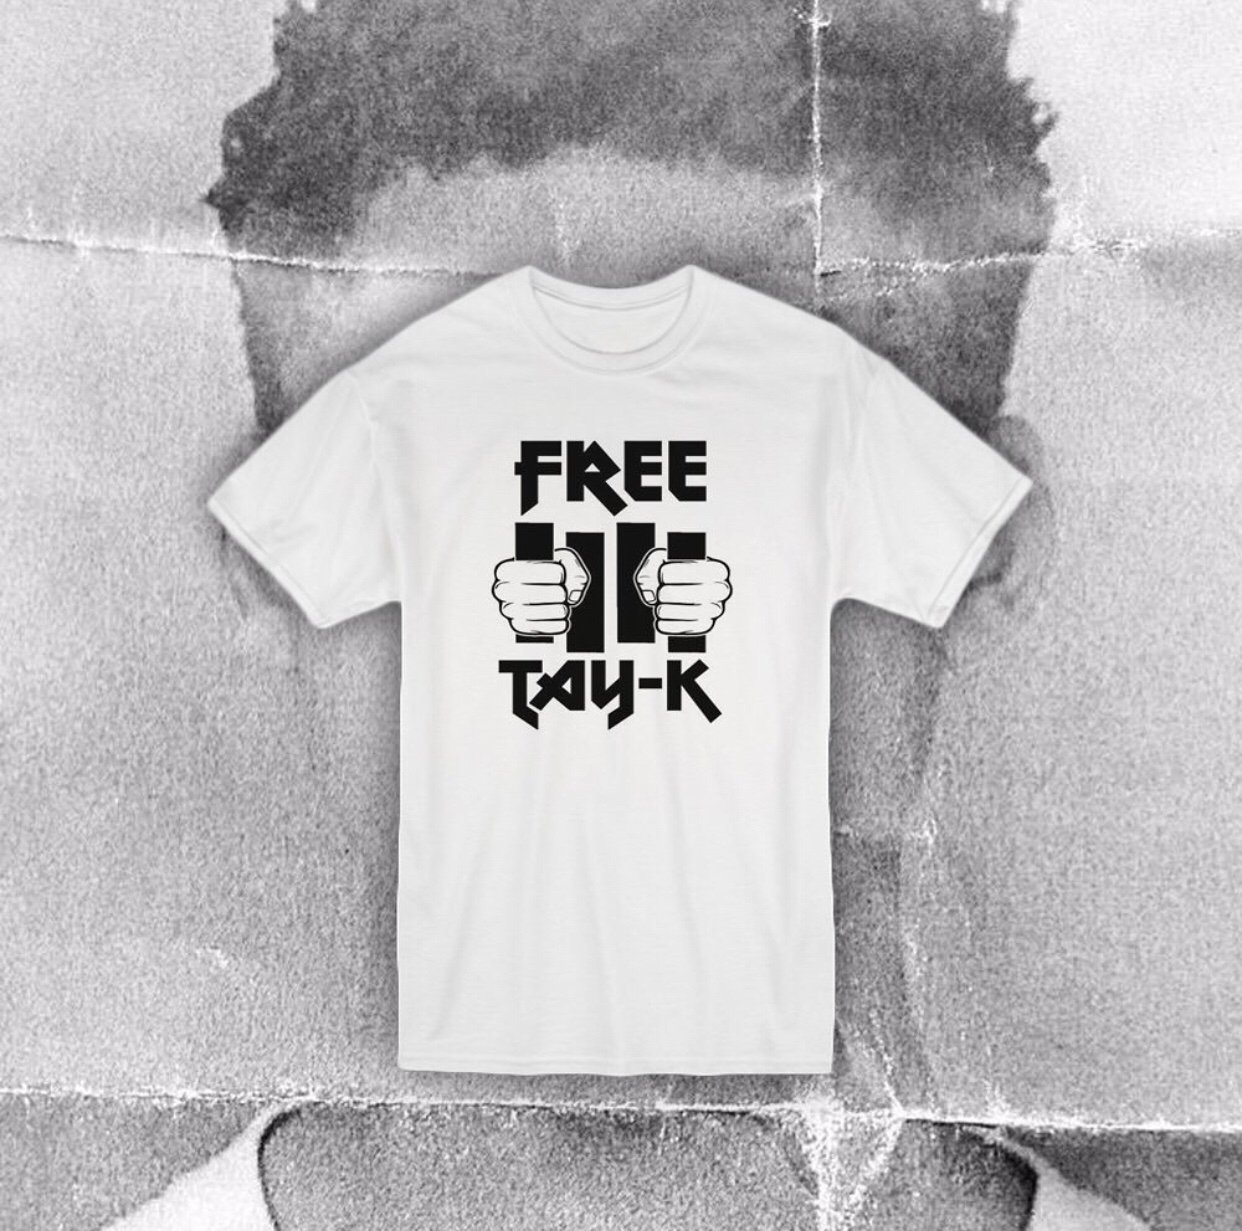 free tay k shirt